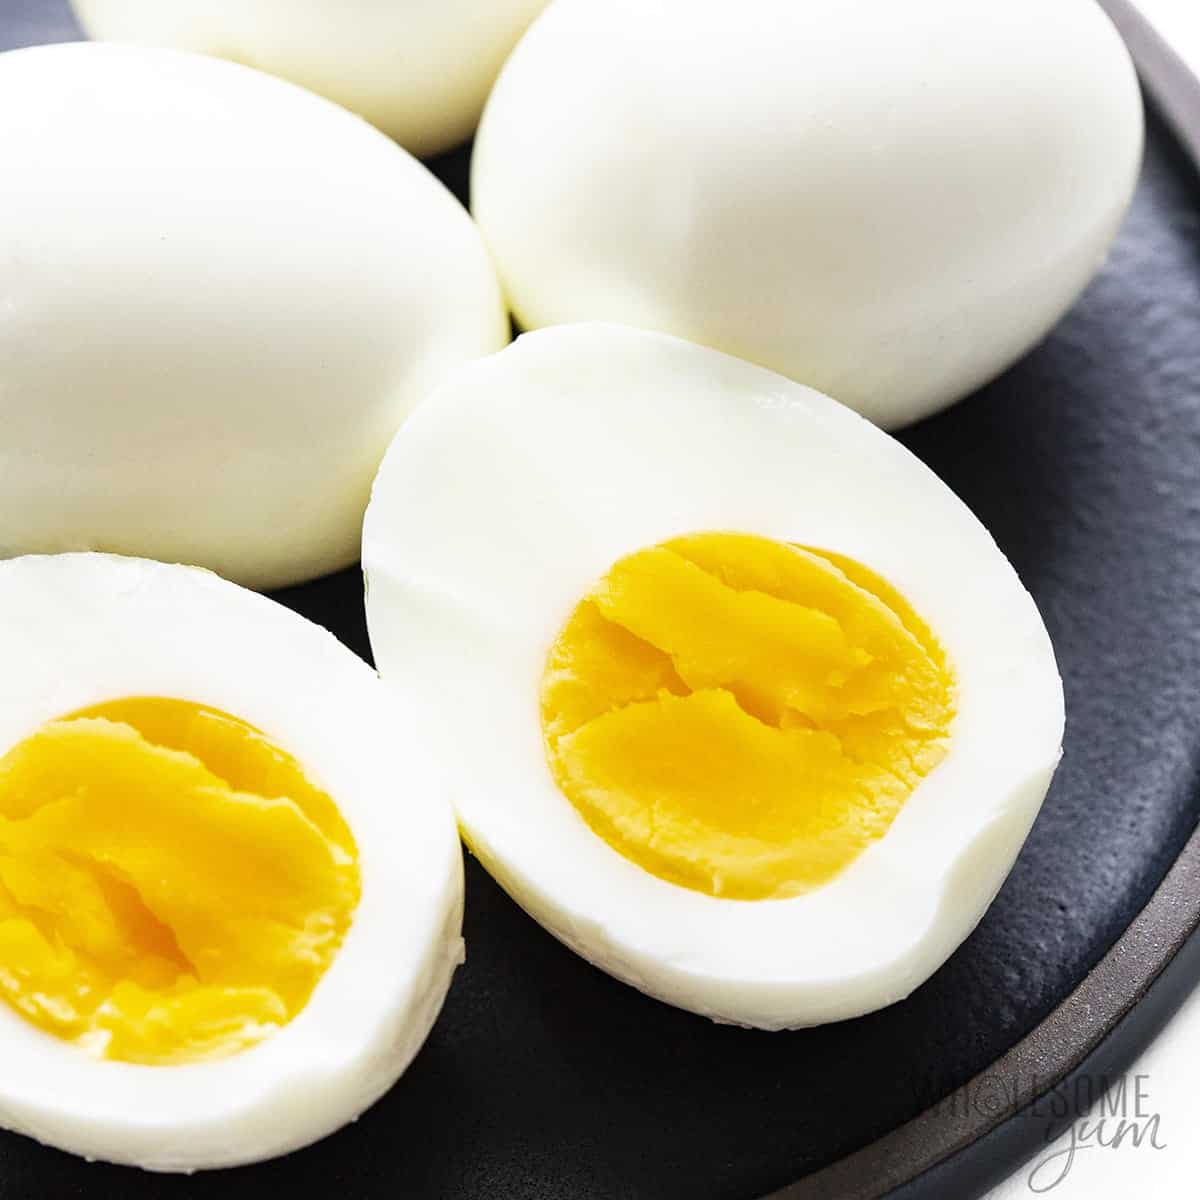 完美的容易剥熟的鸡蛋在盘子里。